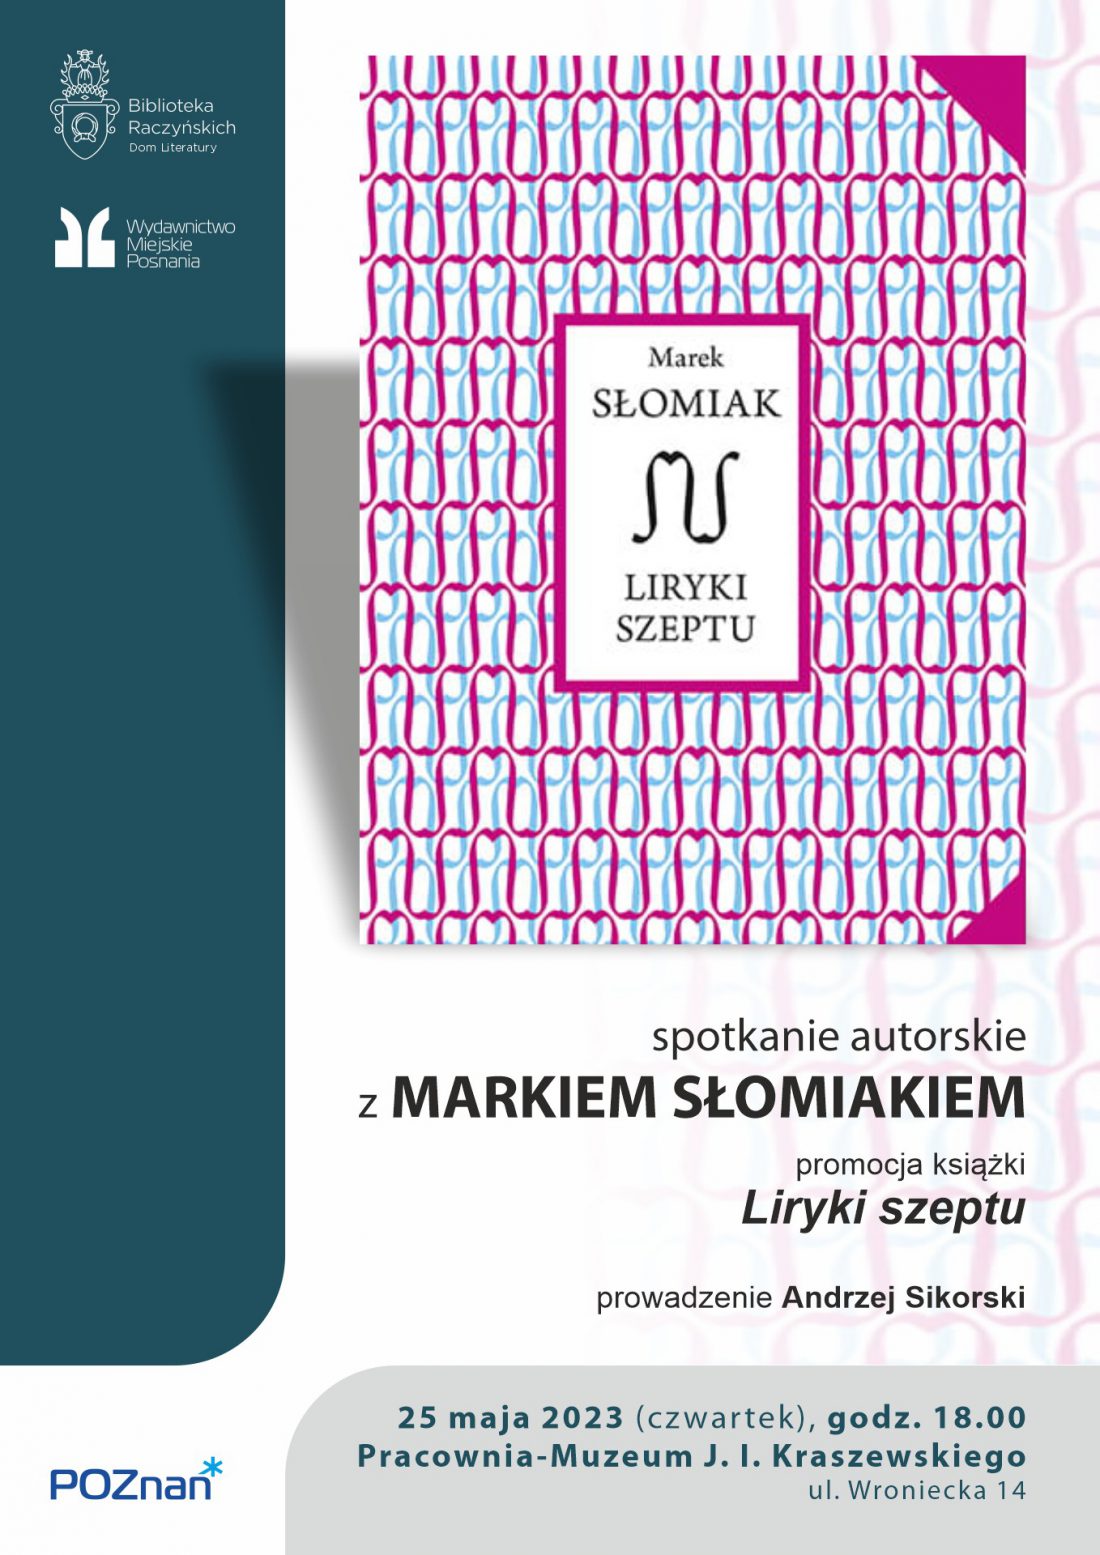 Okładka książki przedstawia symetryczny, gęsty wzór złożony z różowych i niebieskich inicjałów autora.